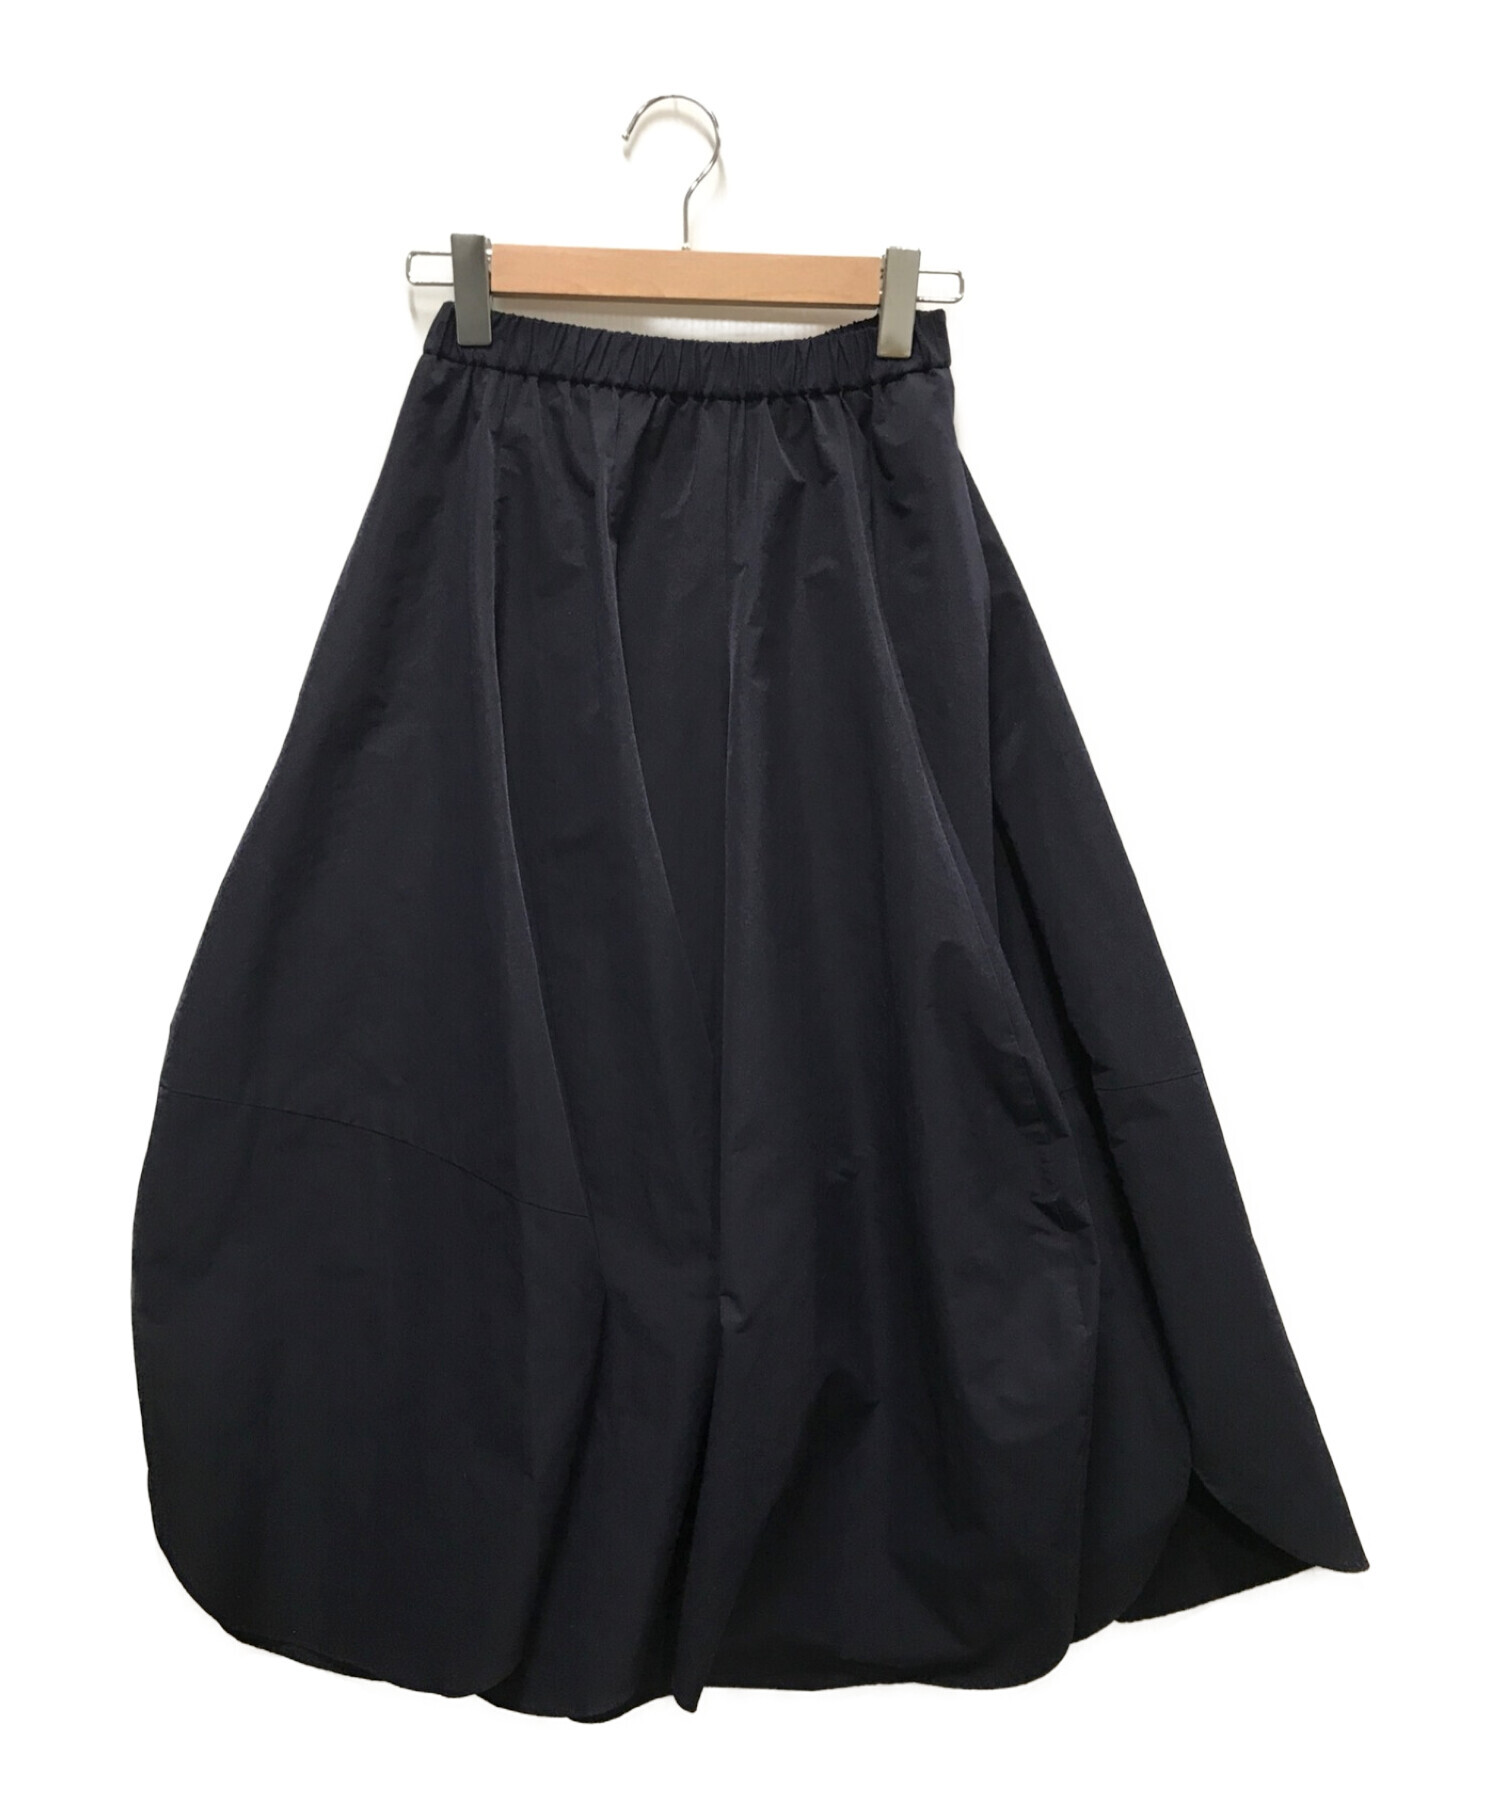 nagonstans (ナゴンスタンス) Peper タフタドレープスカート ネイビー サイズ:SMALL